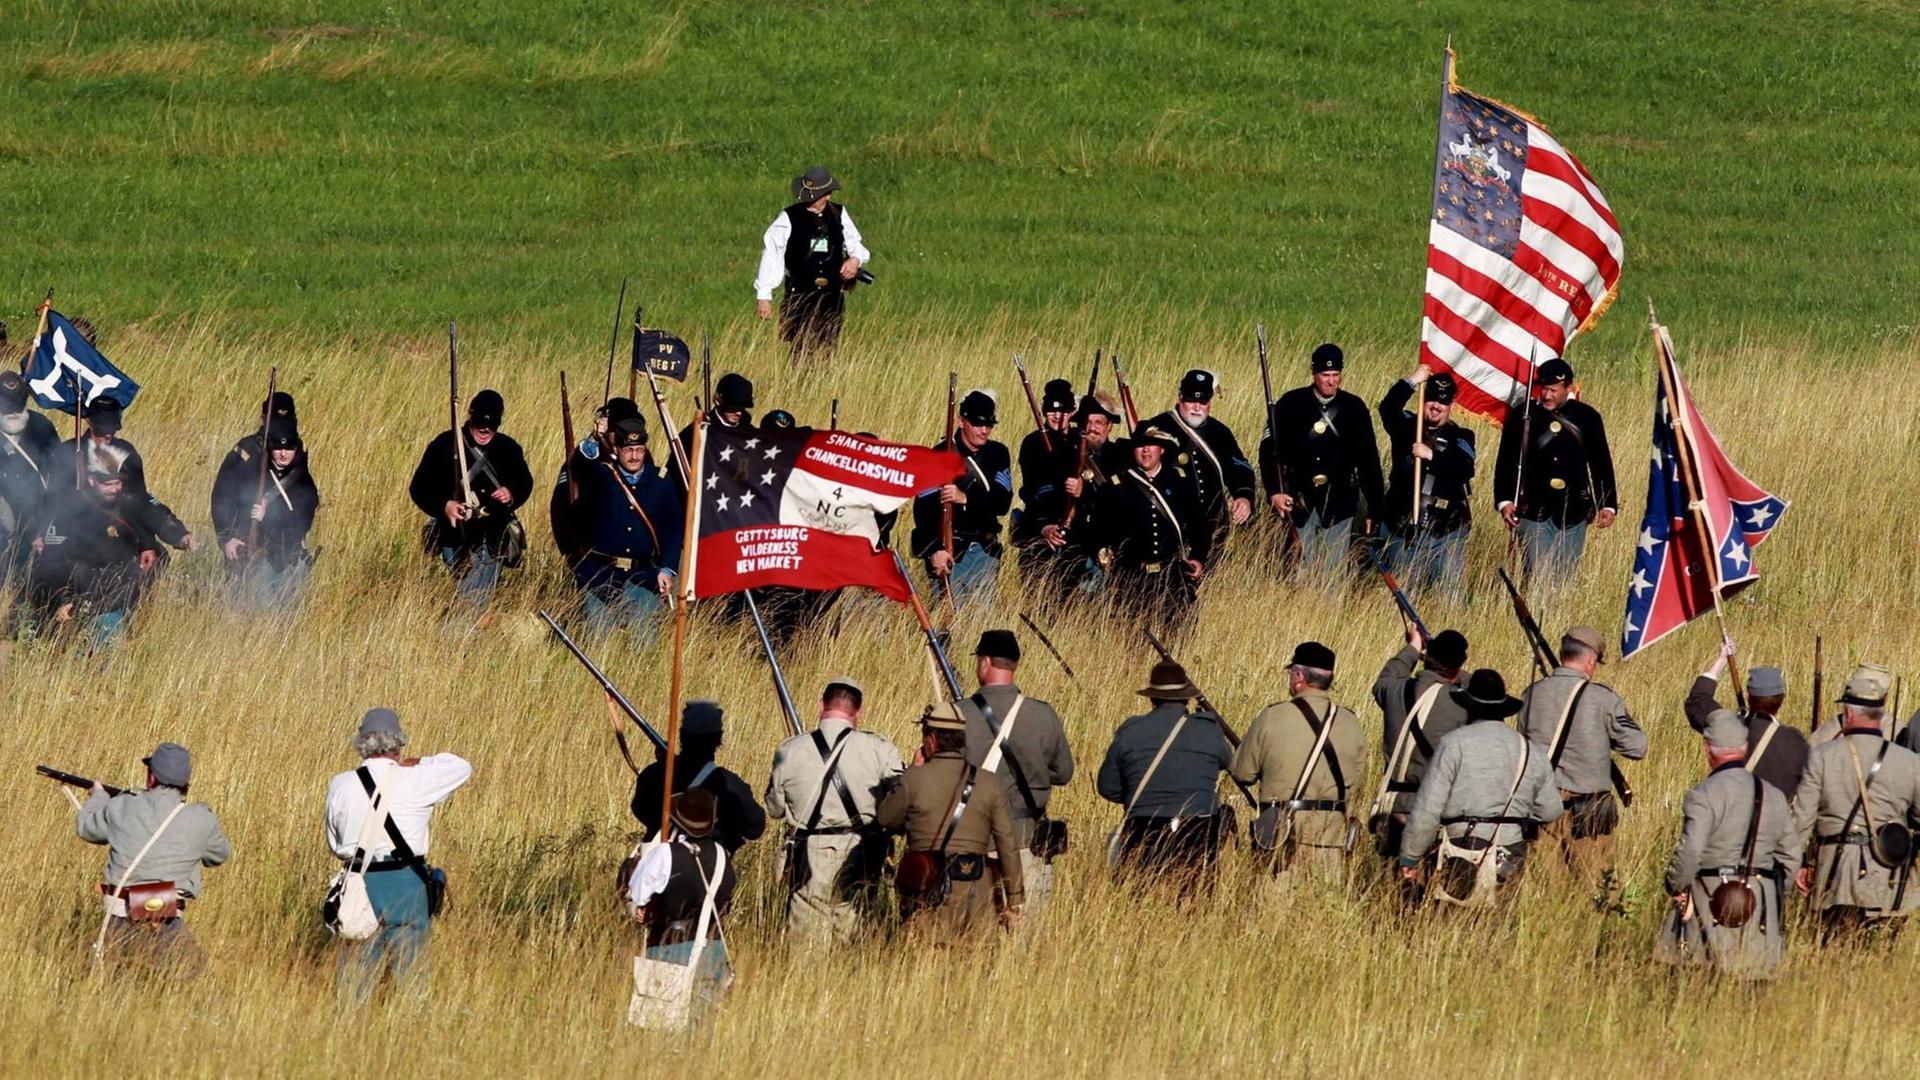 Freiwillige spielen Szenen aus der Schlacht bei Gettysburg in Pennsylvania nach. Sie gilt als Wendepunkt im Amerikanischen Bürgerkrieg.